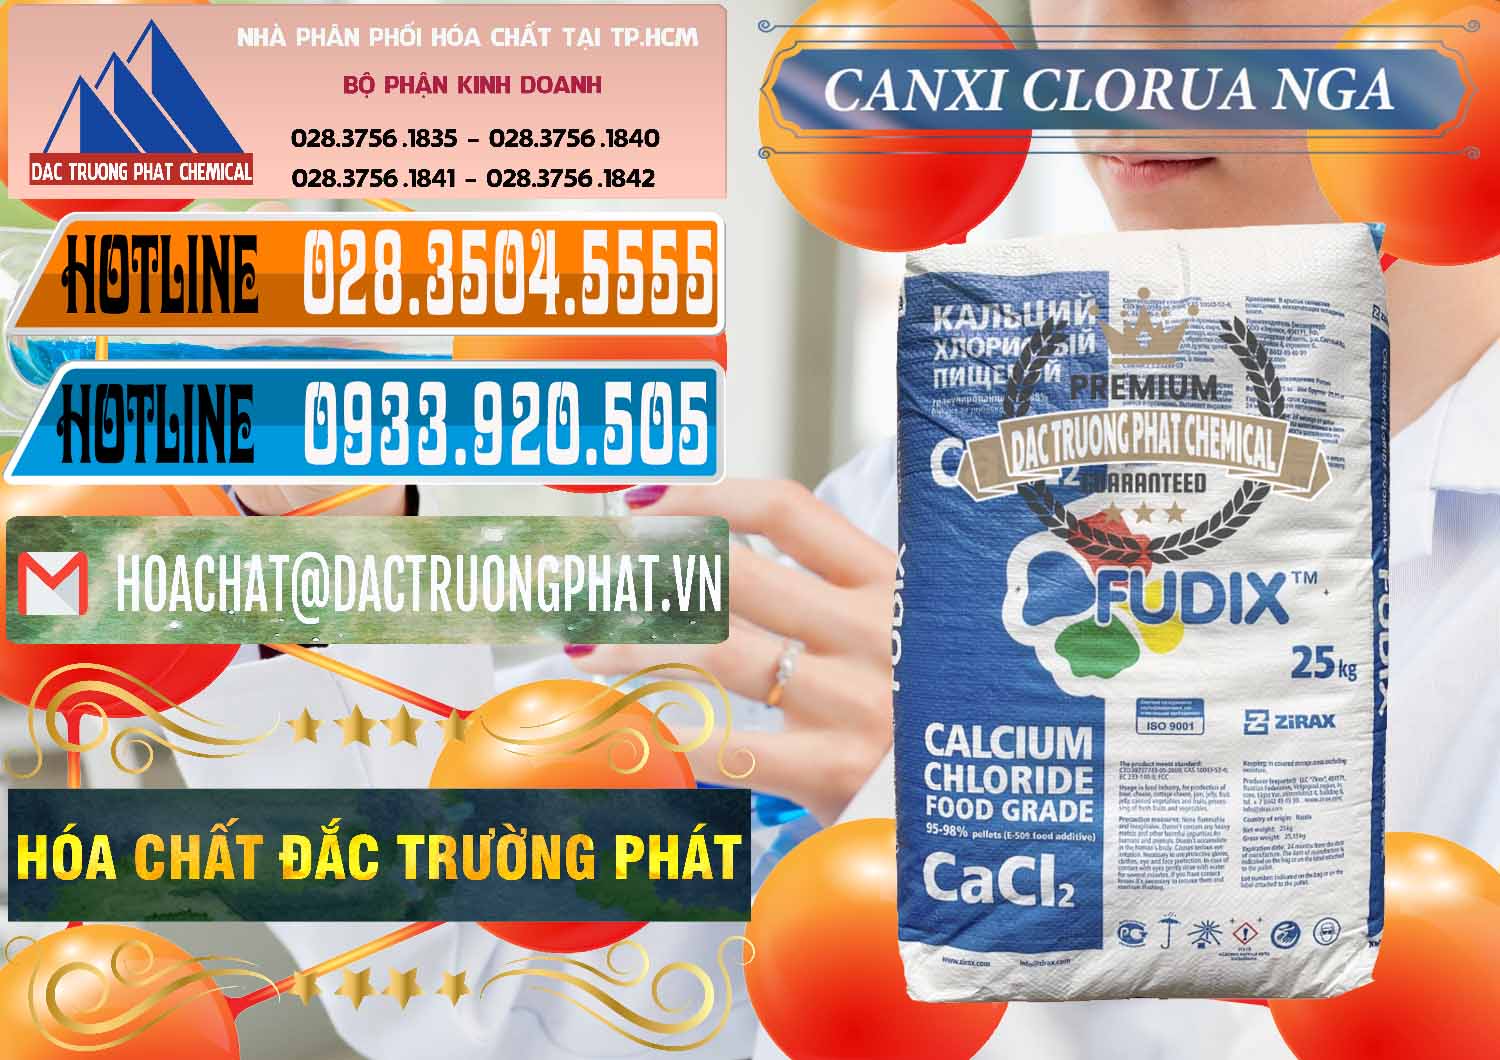 Công ty chuyên nhập khẩu _ bán CaCl2 – Canxi Clorua Nga Russia - 0430 - Công ty chuyên bán - phân phối hóa chất tại TP.HCM - stmp.net